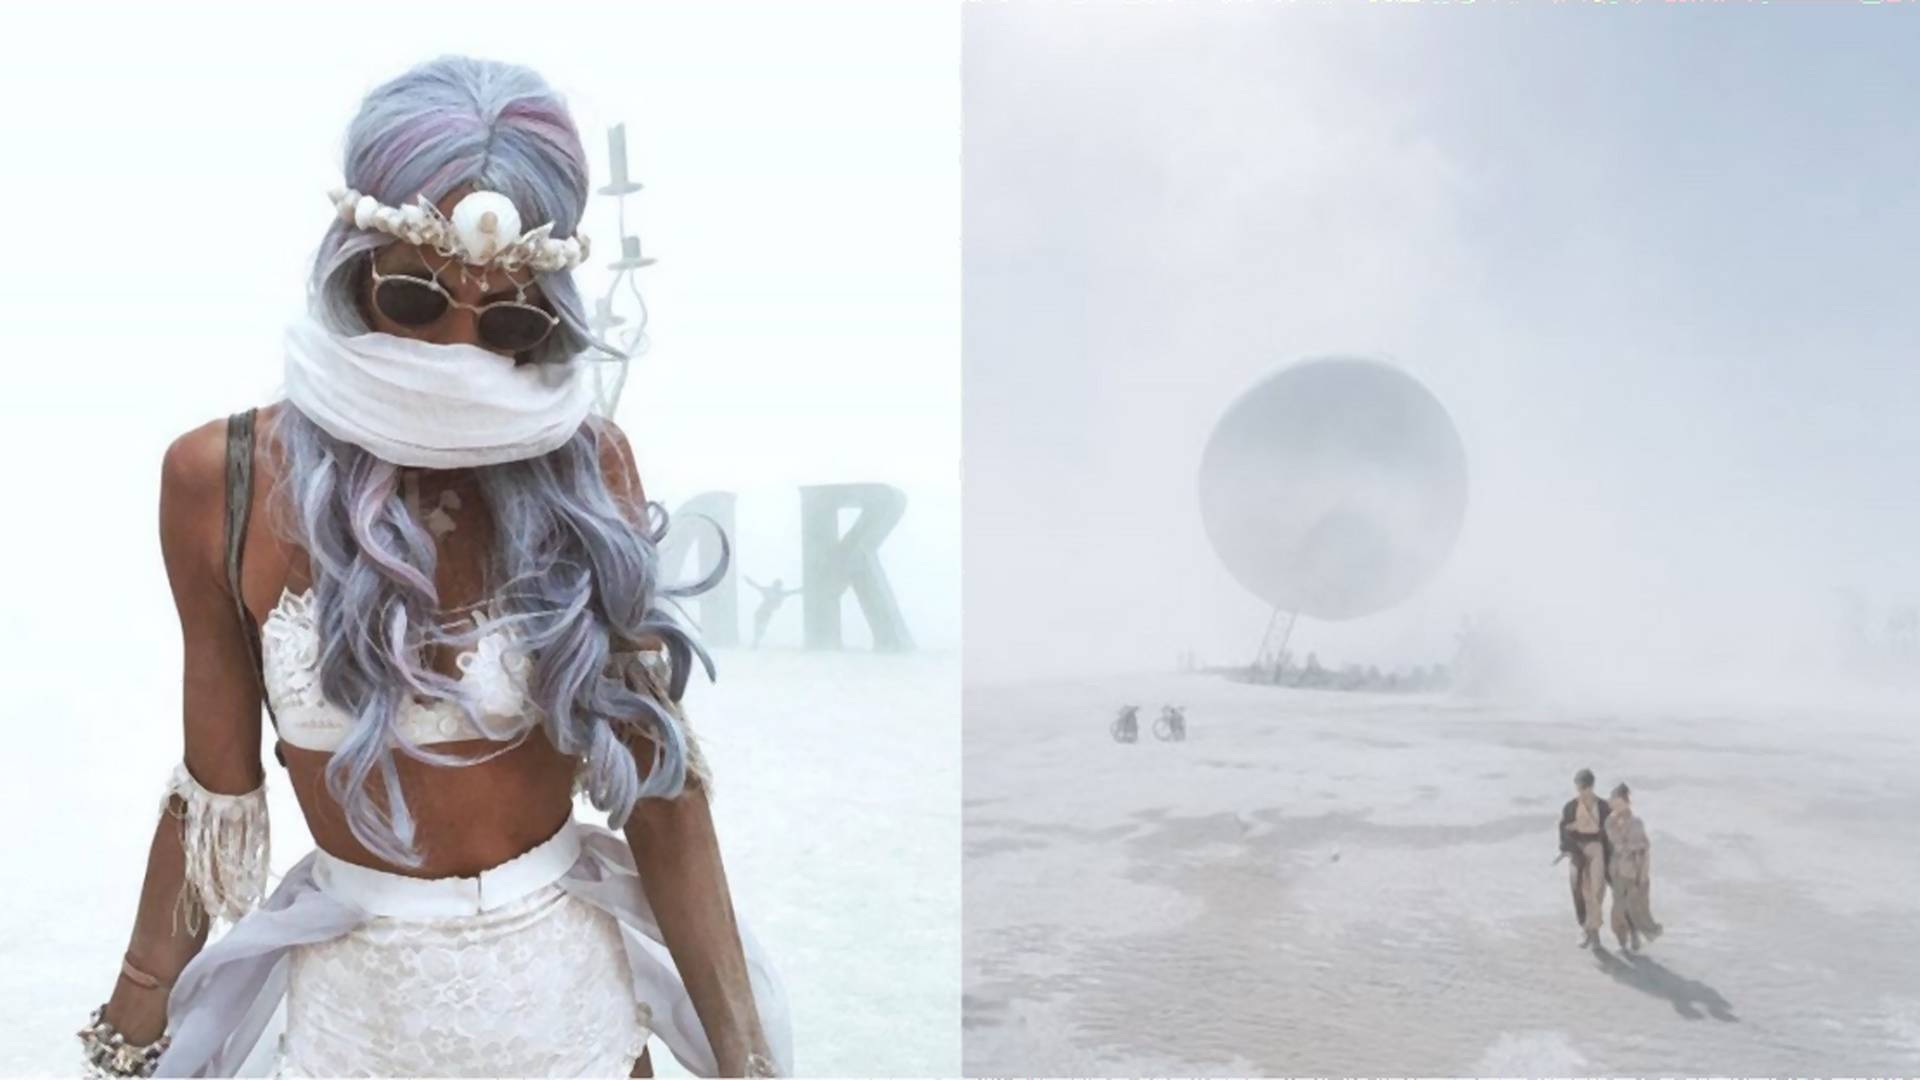 Festival Burning Man pripomína iný vesmír. Pozri si zábery z neho